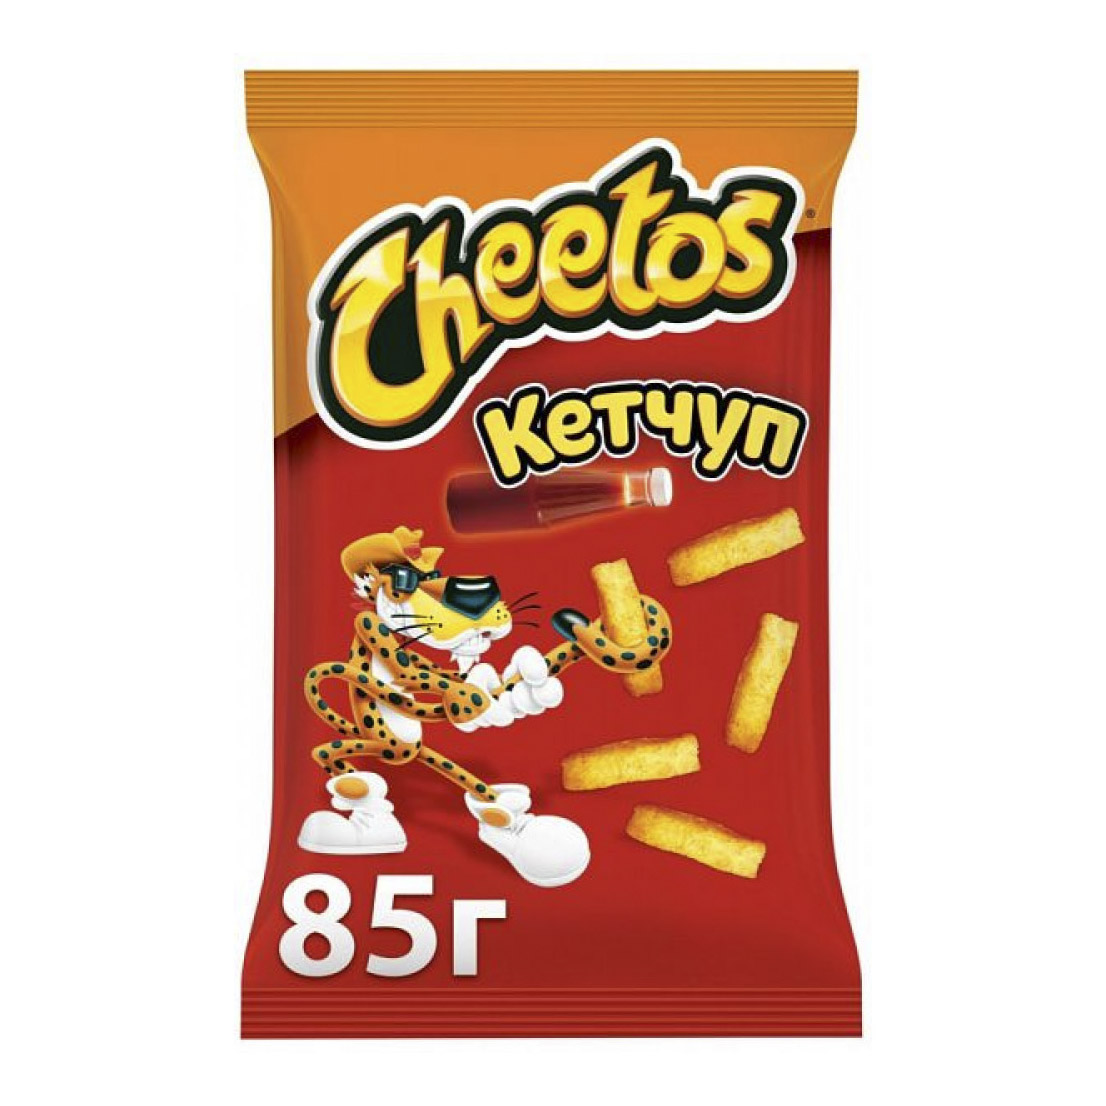 снеки кукурузные cheetos сыр 85 г Кукурузные снэки Cheetos Кетчуп 85 г